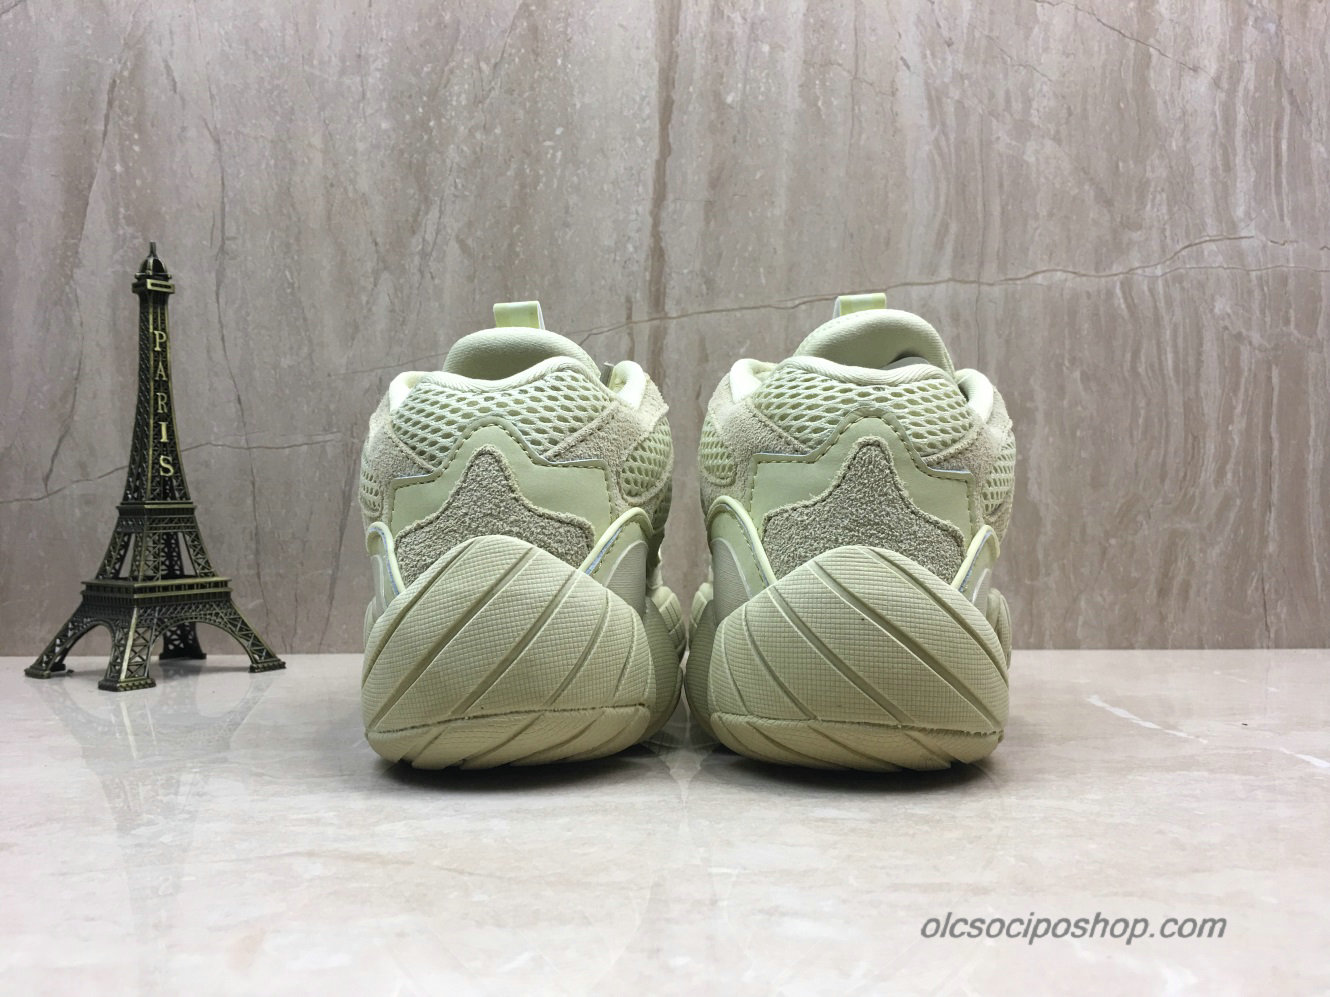 Adidas Yeezy Desert Rat 500 Blush Halványsárga Cipők (DB2966) - Kattintásra bezárul